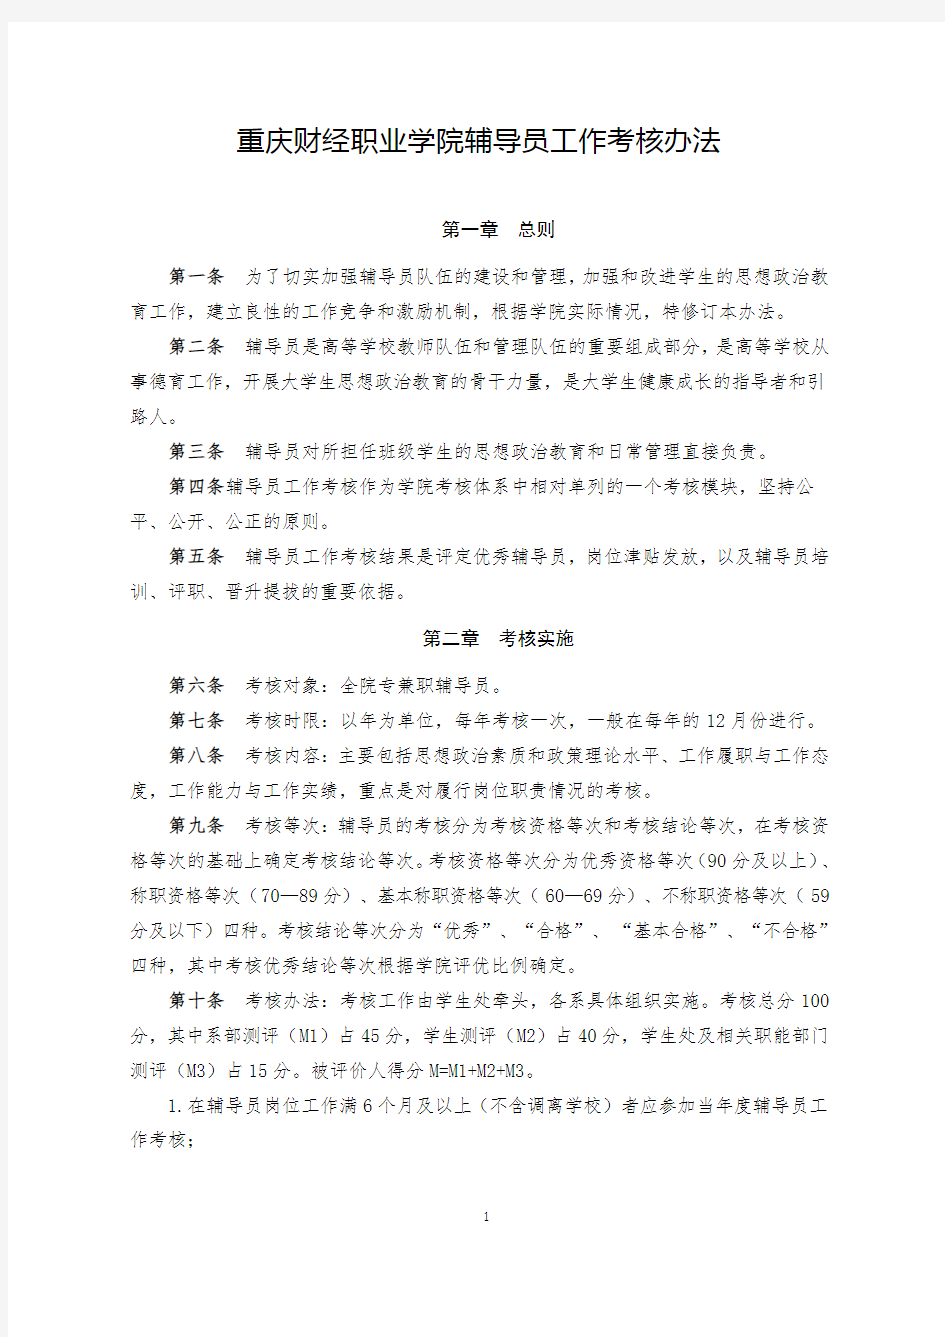 重庆财经职业学院辅导员工作考核办法